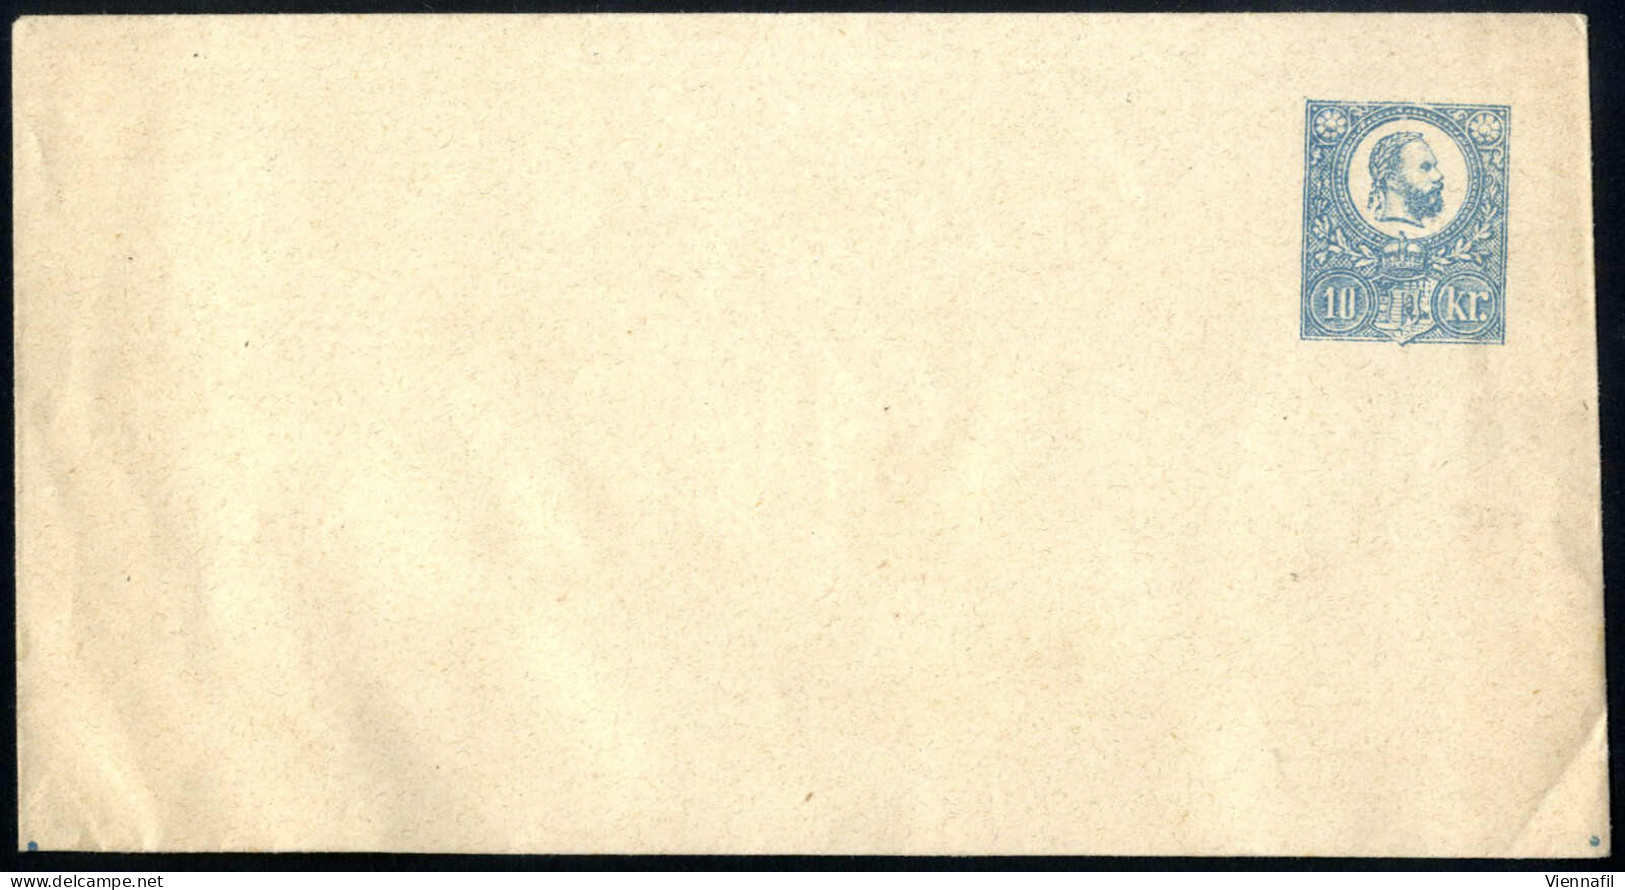 cover Ungarn 1871/1953 ca., Lot mit 30 Briefen / Paketkarten / Ganzsachen im Album, ein Attest, Abbildungen siehe Online